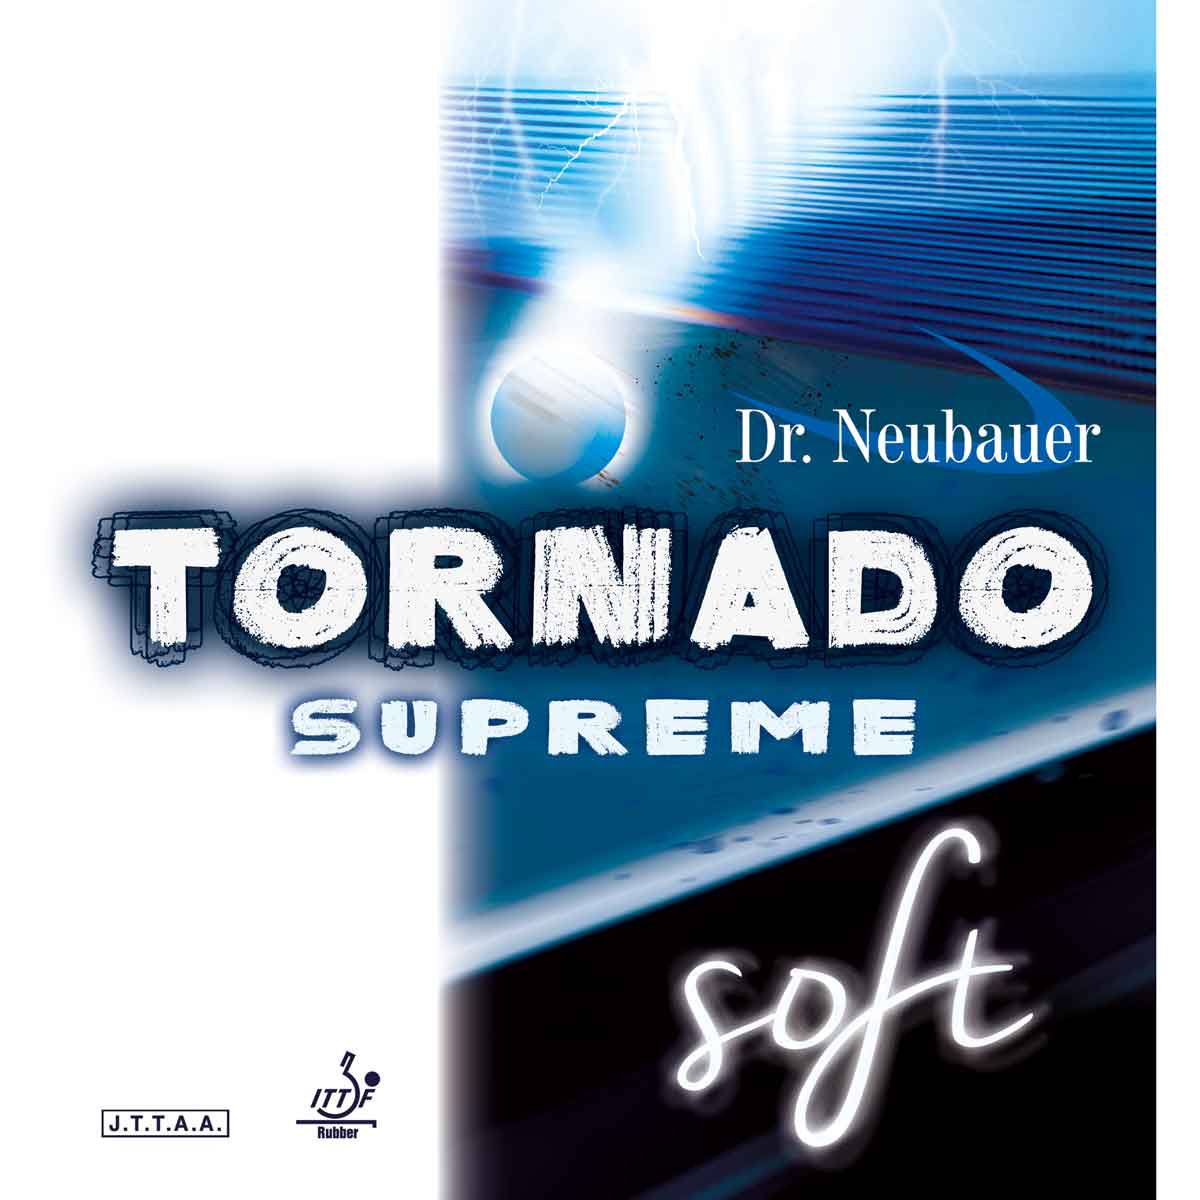 Dr. Neubauer Belag Tornado Supreme Soft